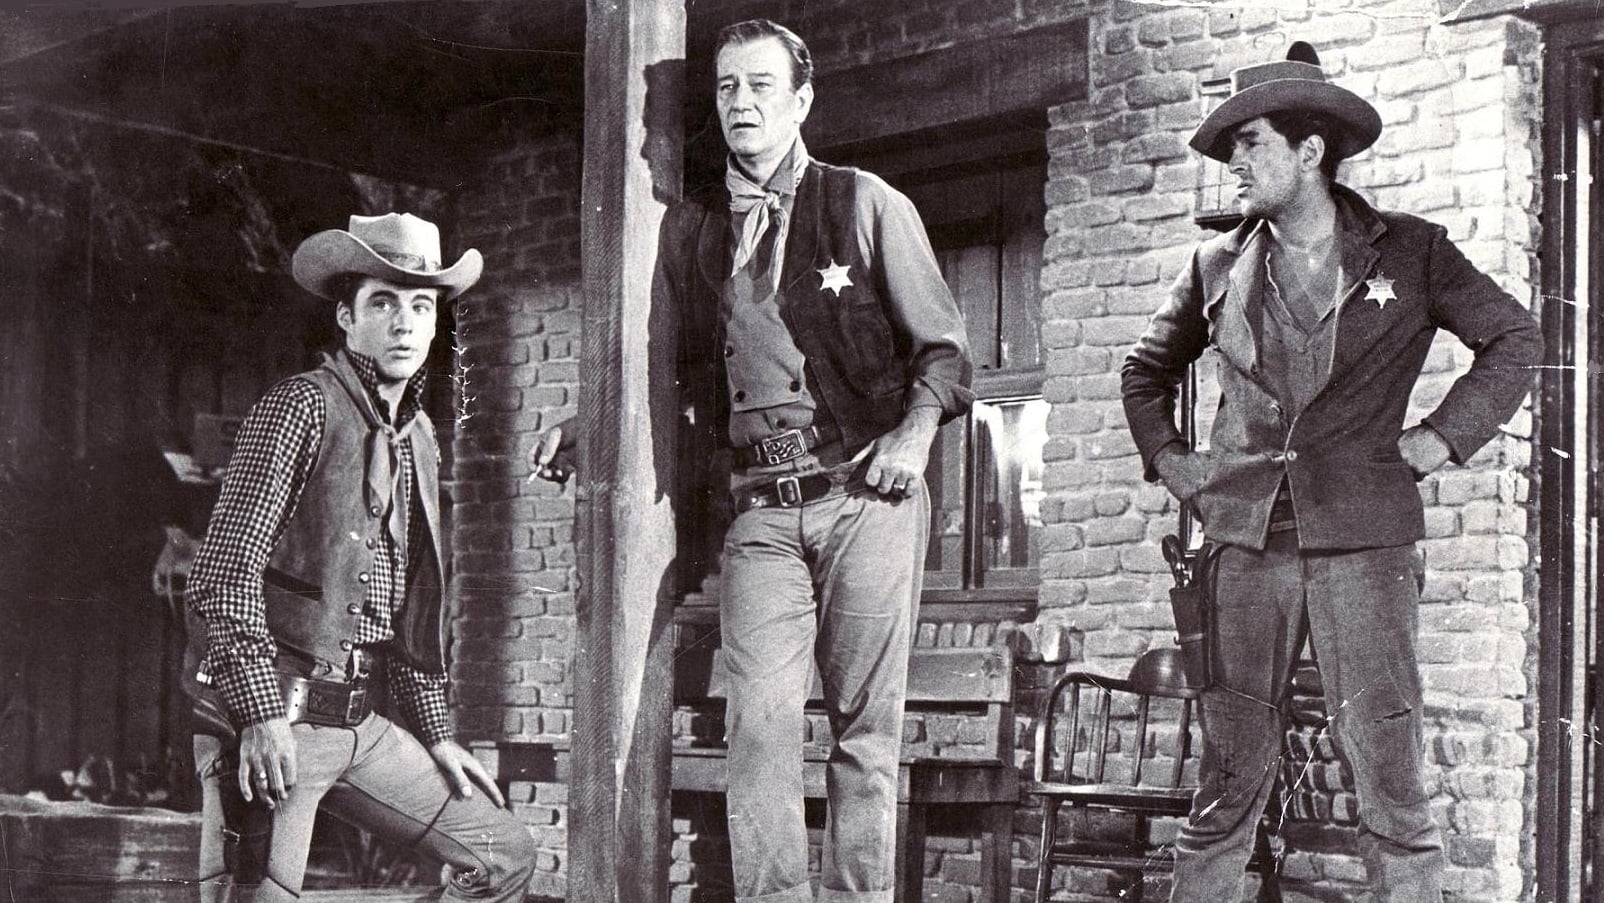 دانلود فیلم Rio Bravo 1959